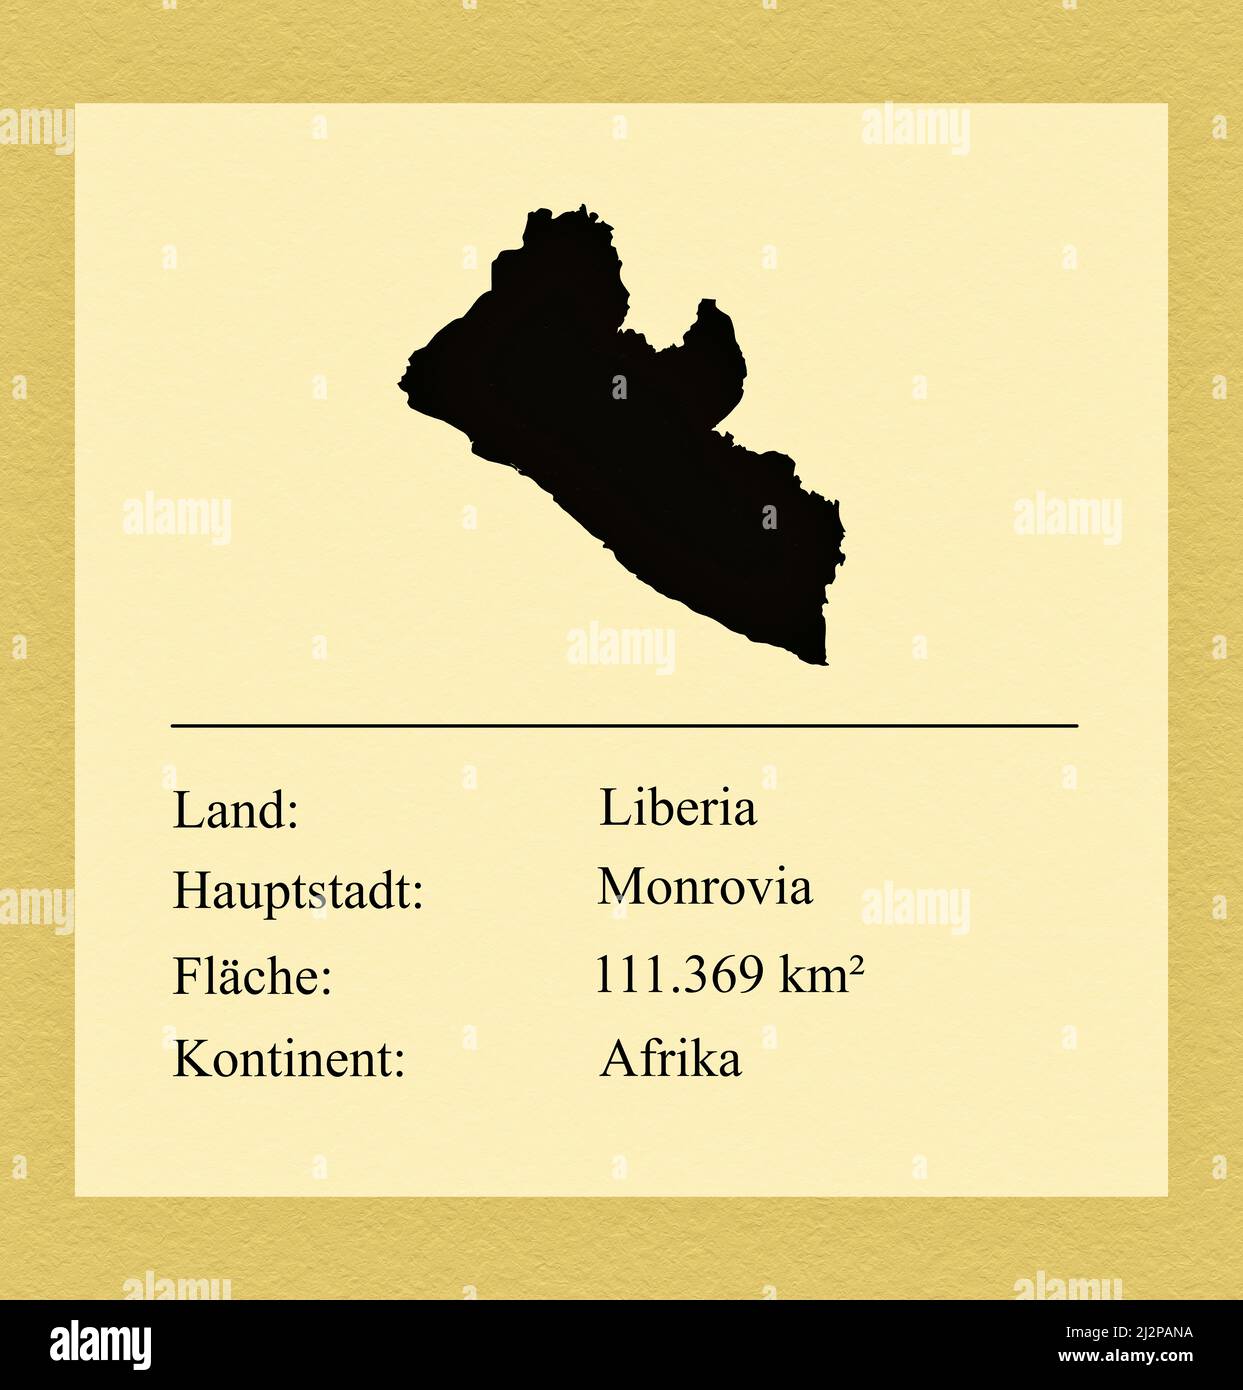 Umrisse des Landes Liberia, darunter ein kleiner Steckbrief mit Ländernamen, Hauptstadt, Fläche und Kontinent Foto de stock